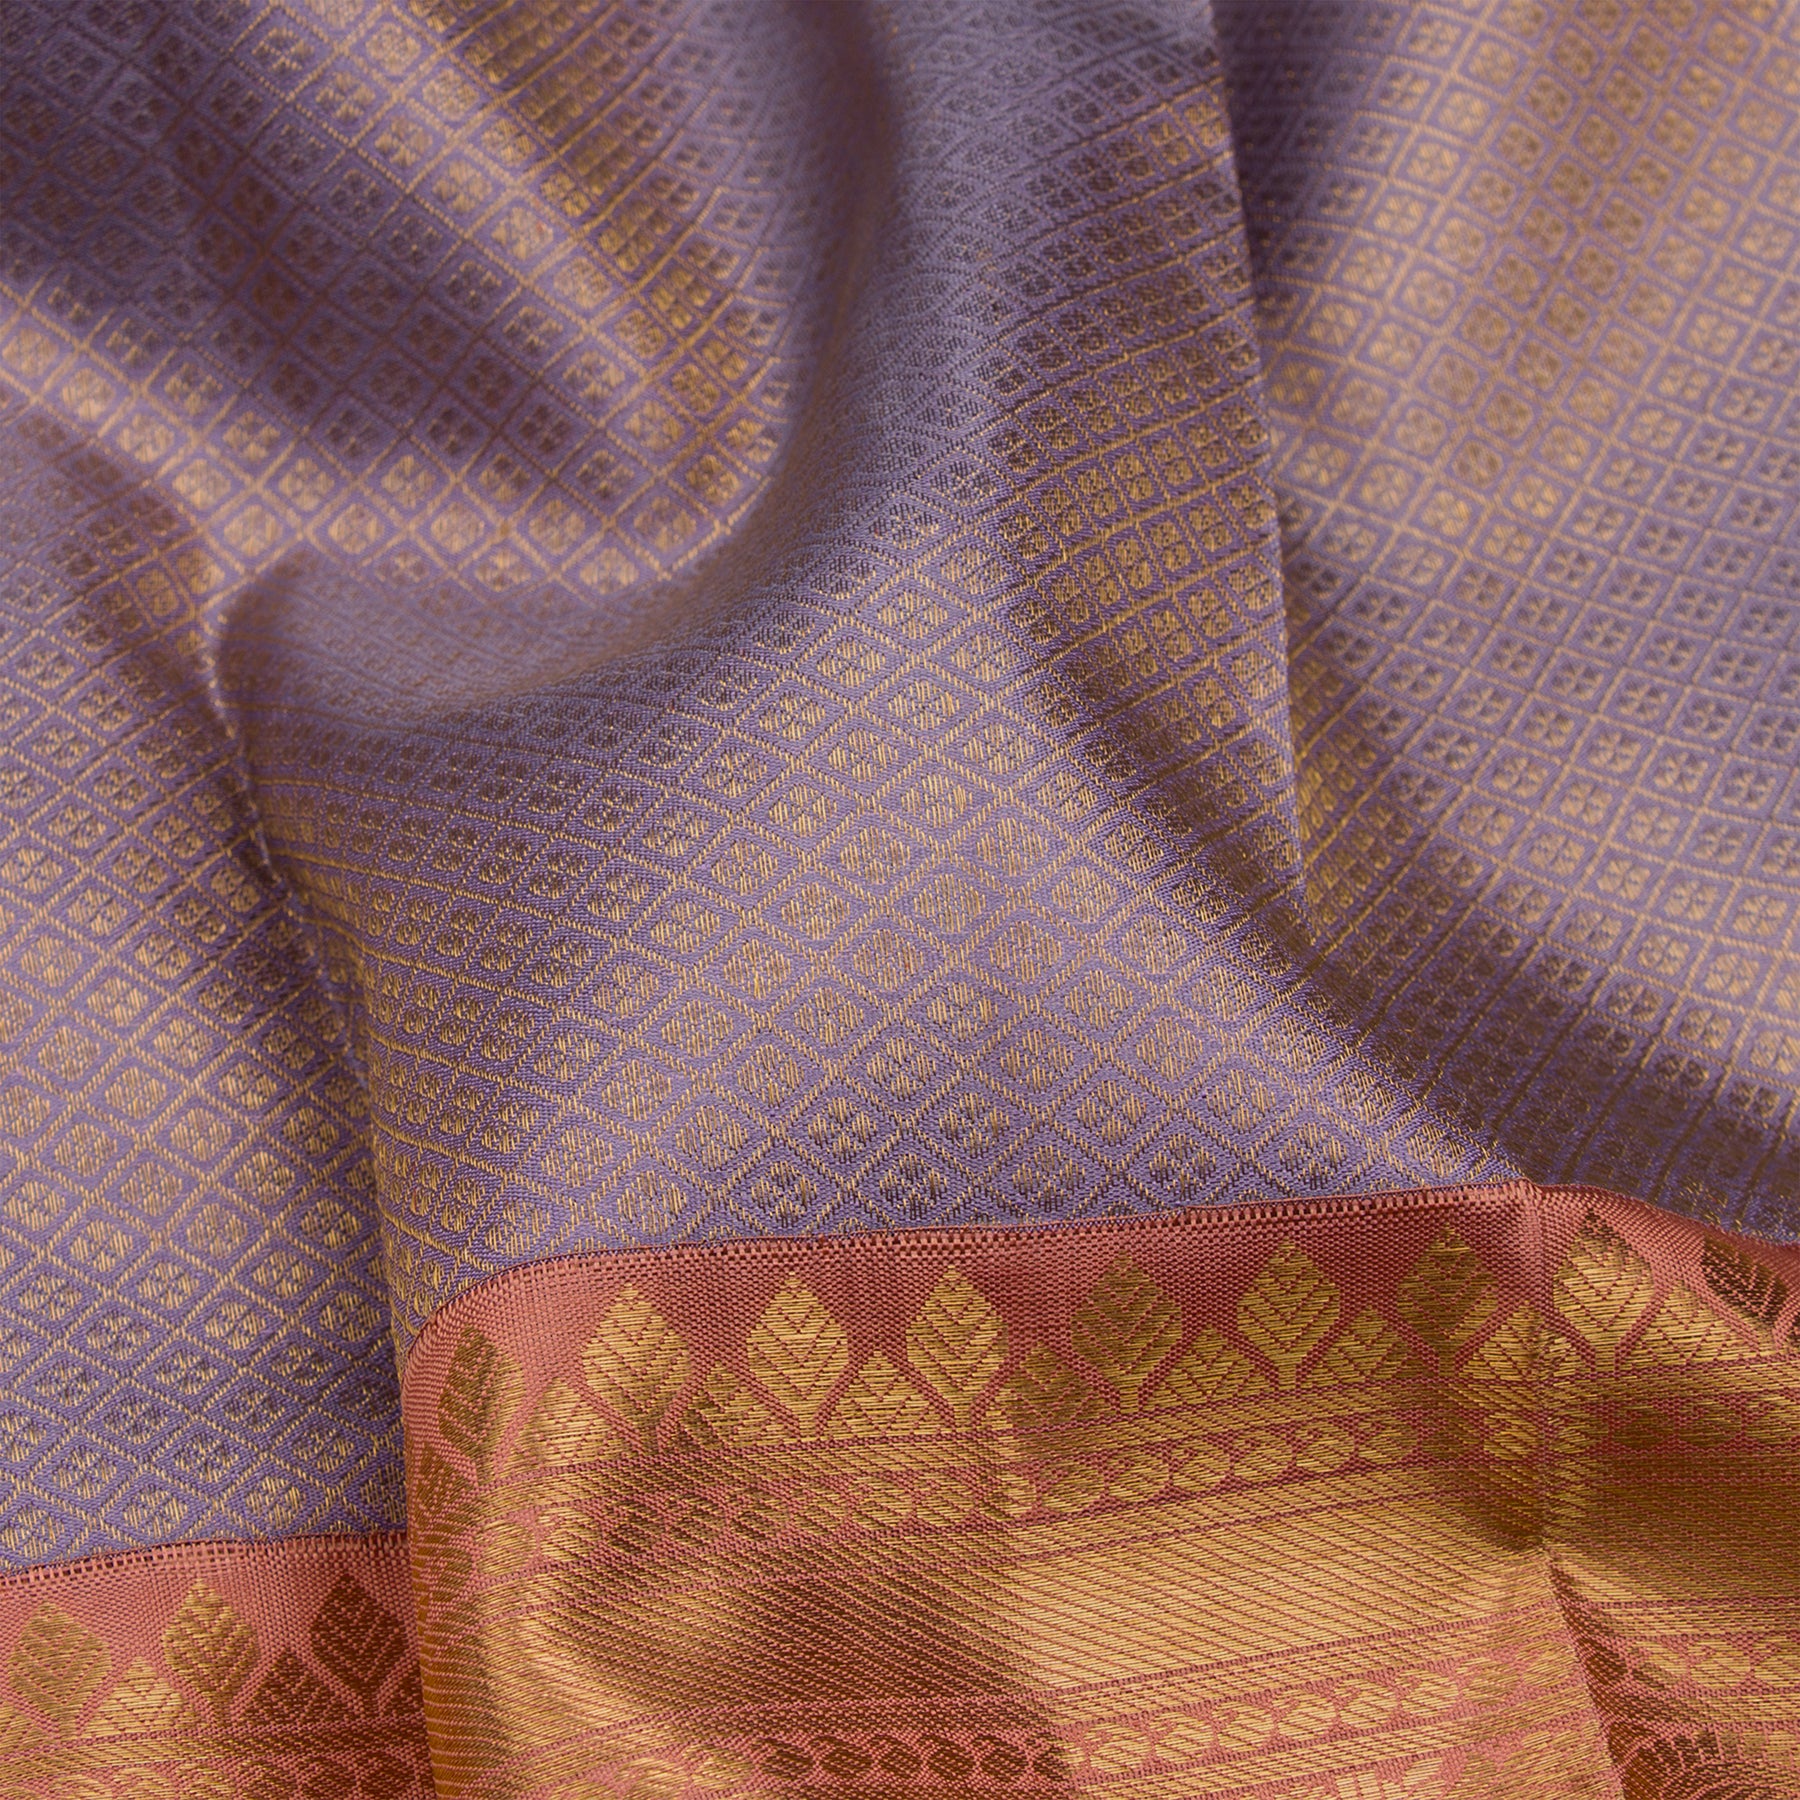 Kanakavalli Kanjivaram Silk Sari 23-110-HS001-02969 - Fabric View